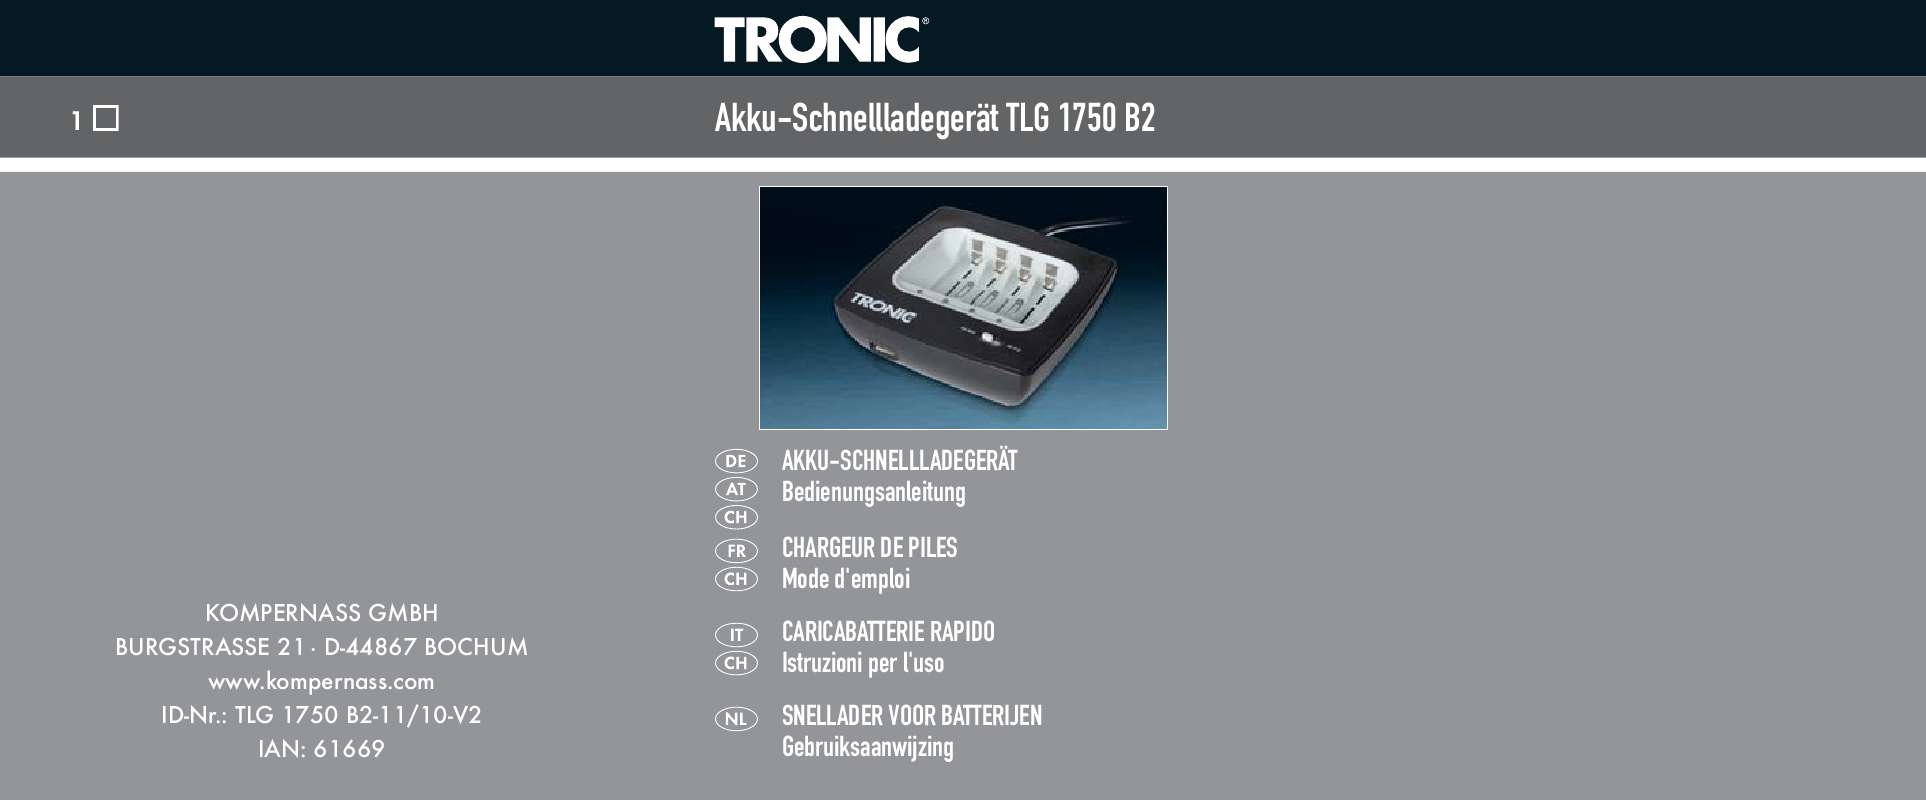 Guide utilisation  TRONIC TLG 1750 B2 QUICK-CHARGE BATTERY CHARGER  de la marque TRONIC